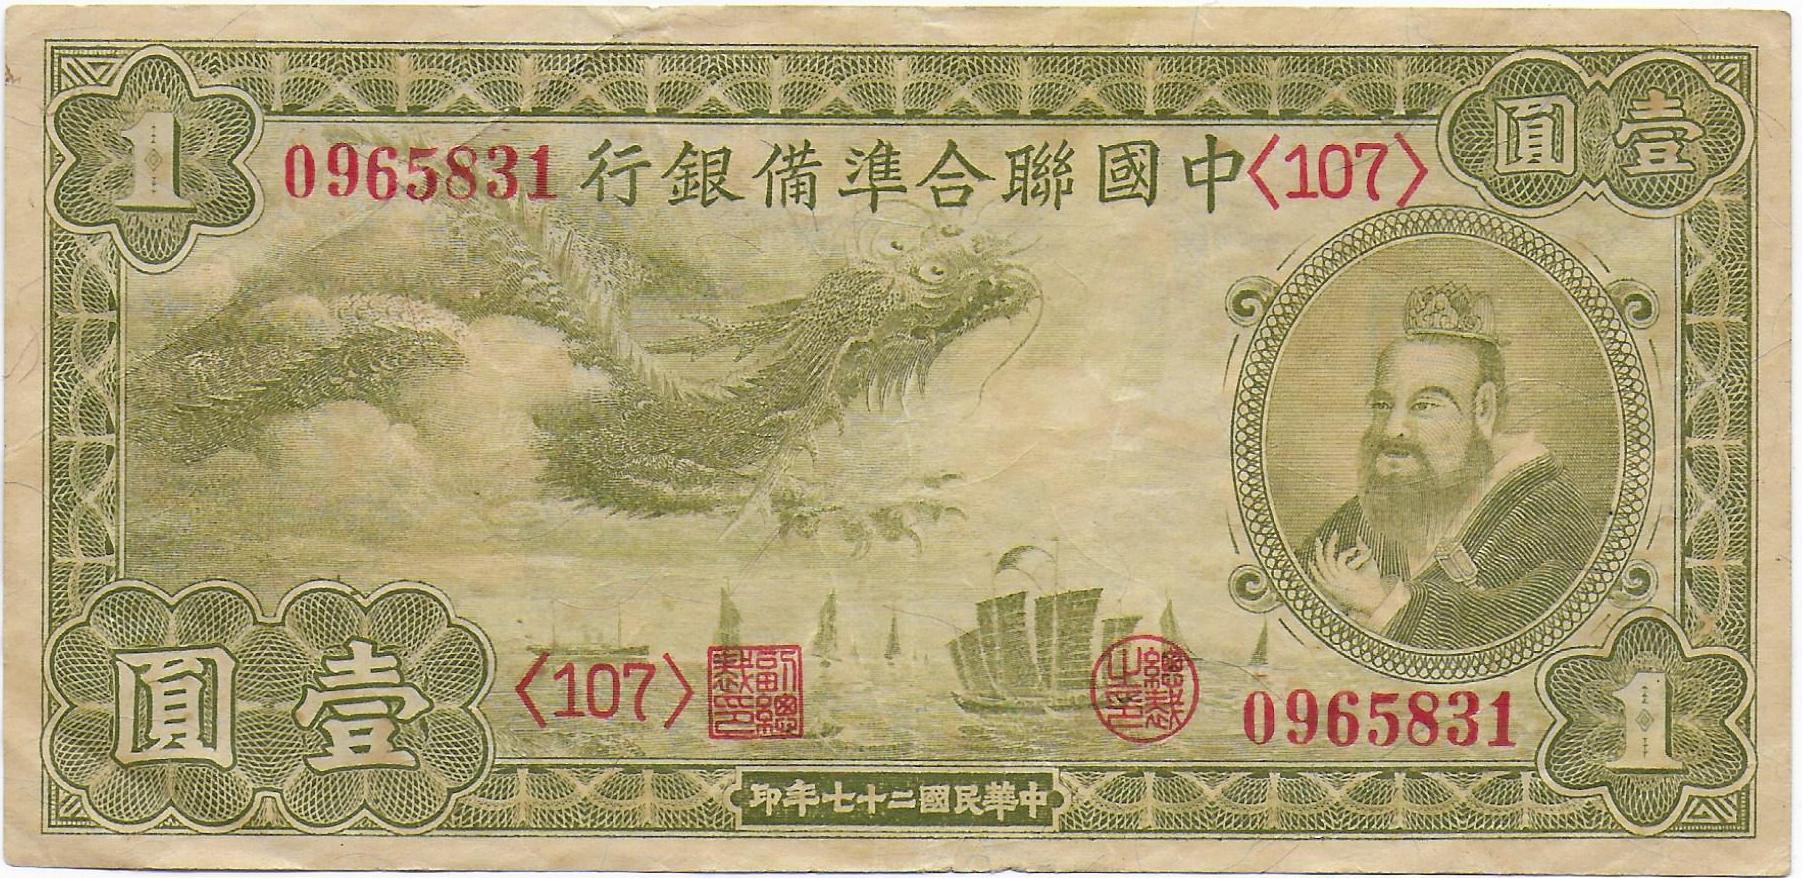 China Federal Reserve Bank of China 1 Yuan 1938 front.jpg